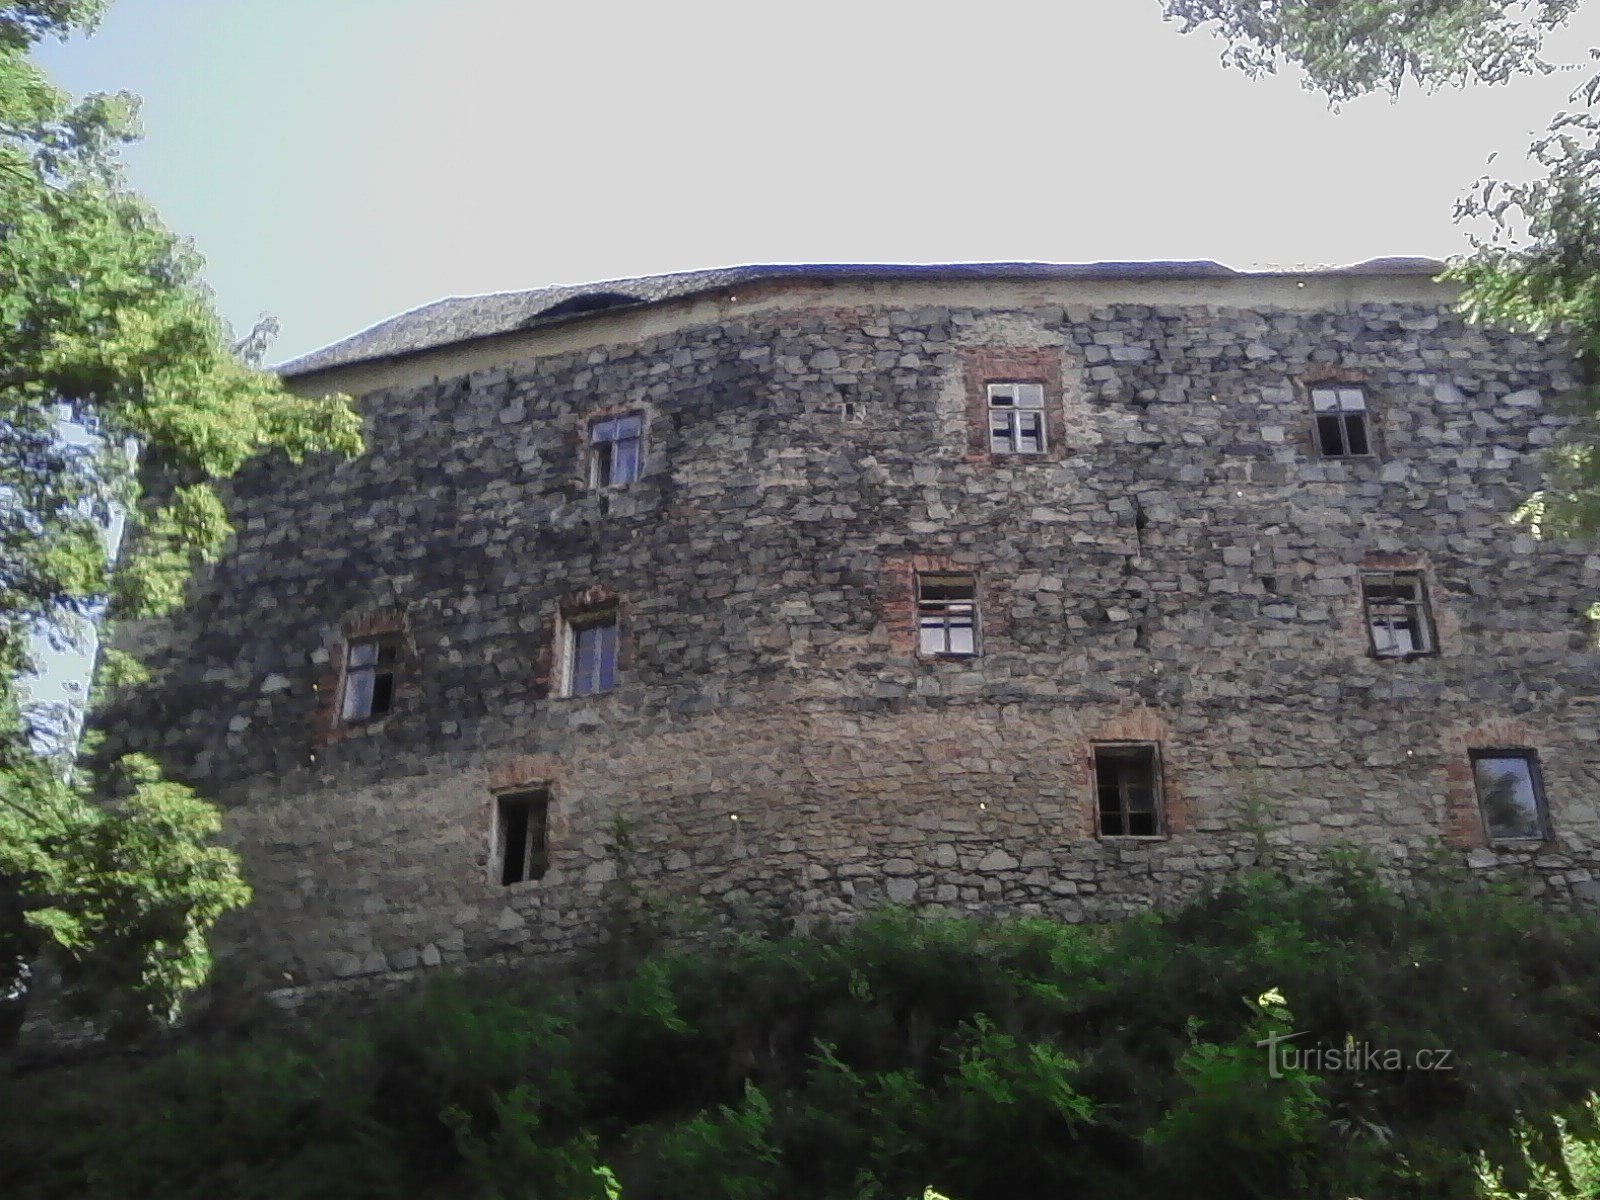 1. Pilvilinnoitus. Keskiaikainen linnoitus 14-luvulta. palatsin linnoituksia, se seisoo kukkulalla